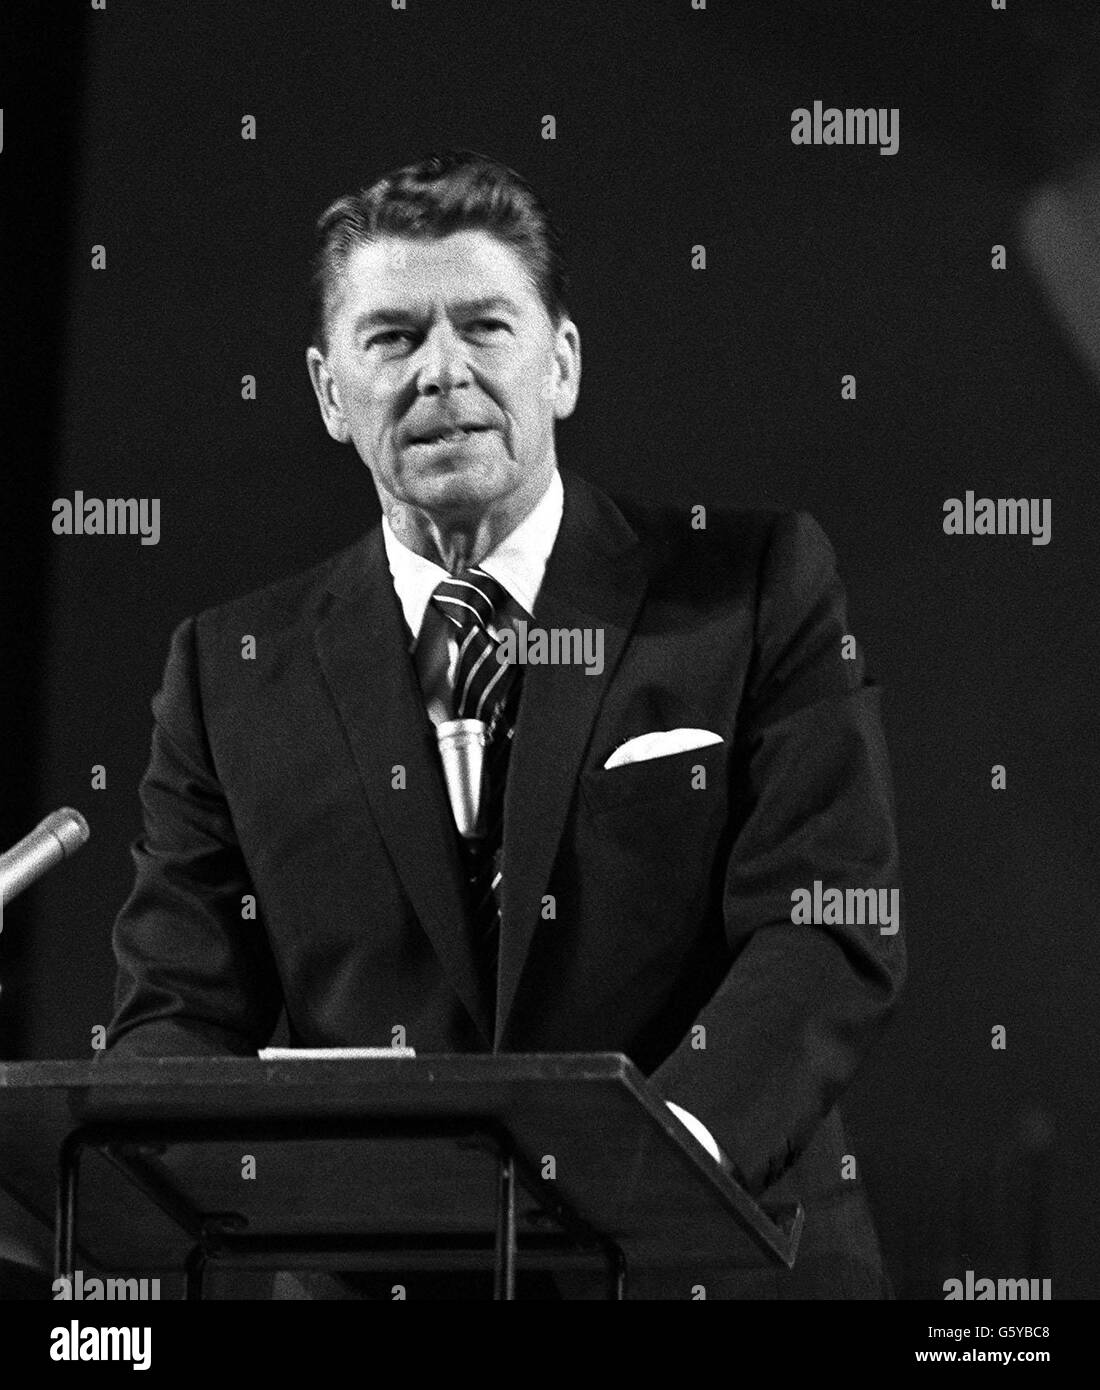 Alla conferenza annuale dell'Institute of Directors alla Royal Albert Hall di Londra è intervenuto il governatore Ronald Reagan dello Stato della California. Il governatore Reagan, ex star del cinema hollywoodiano, si è rivolto alla conferenza sul tema "The New Noblesse oblige". Foto Stock